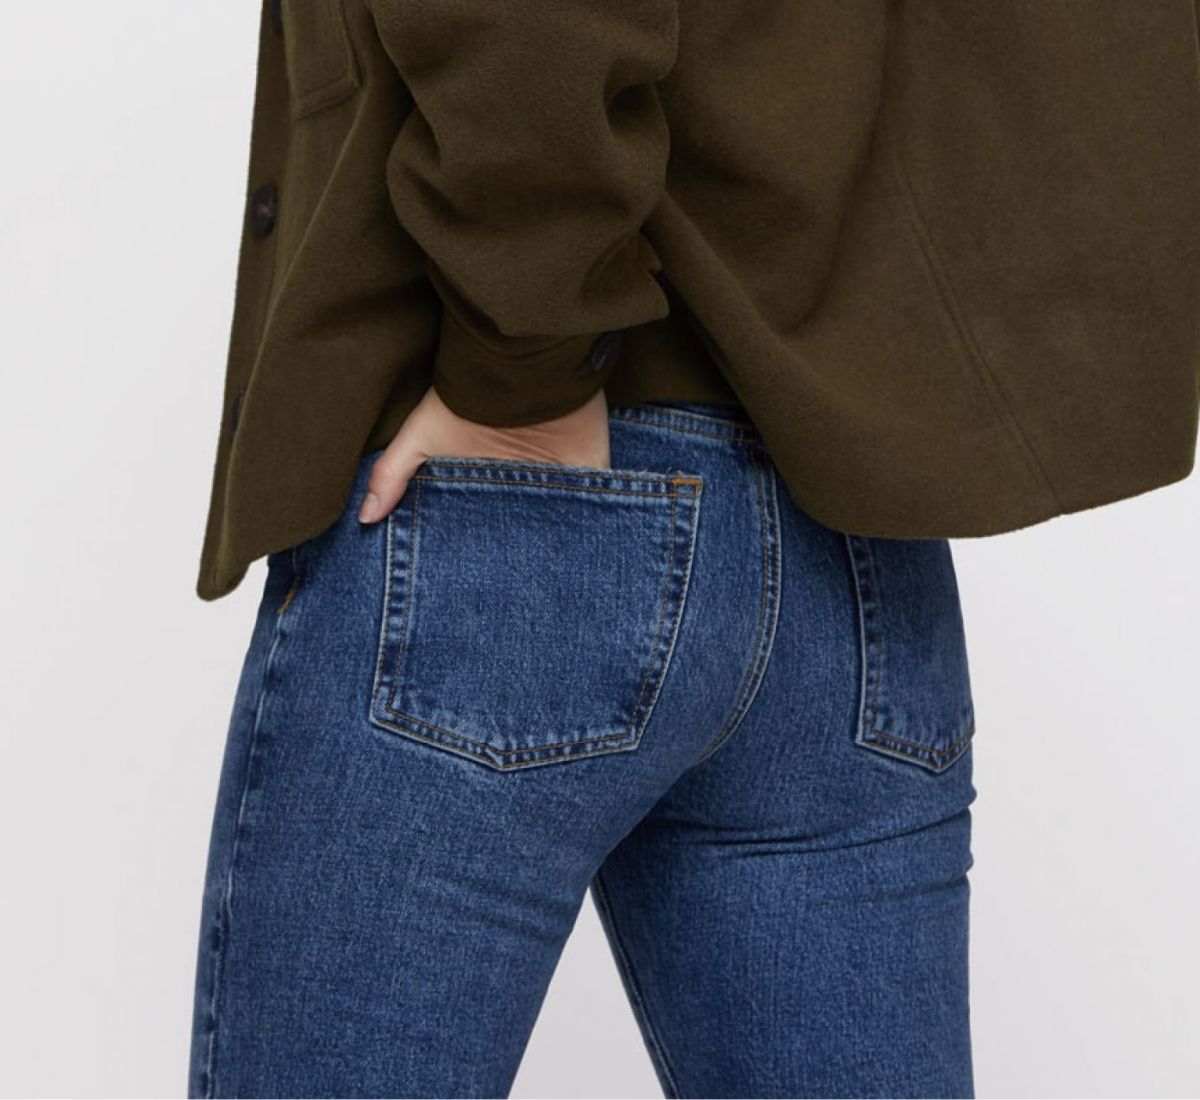 Perfect match : comment savoir si ce jean est le bon ?